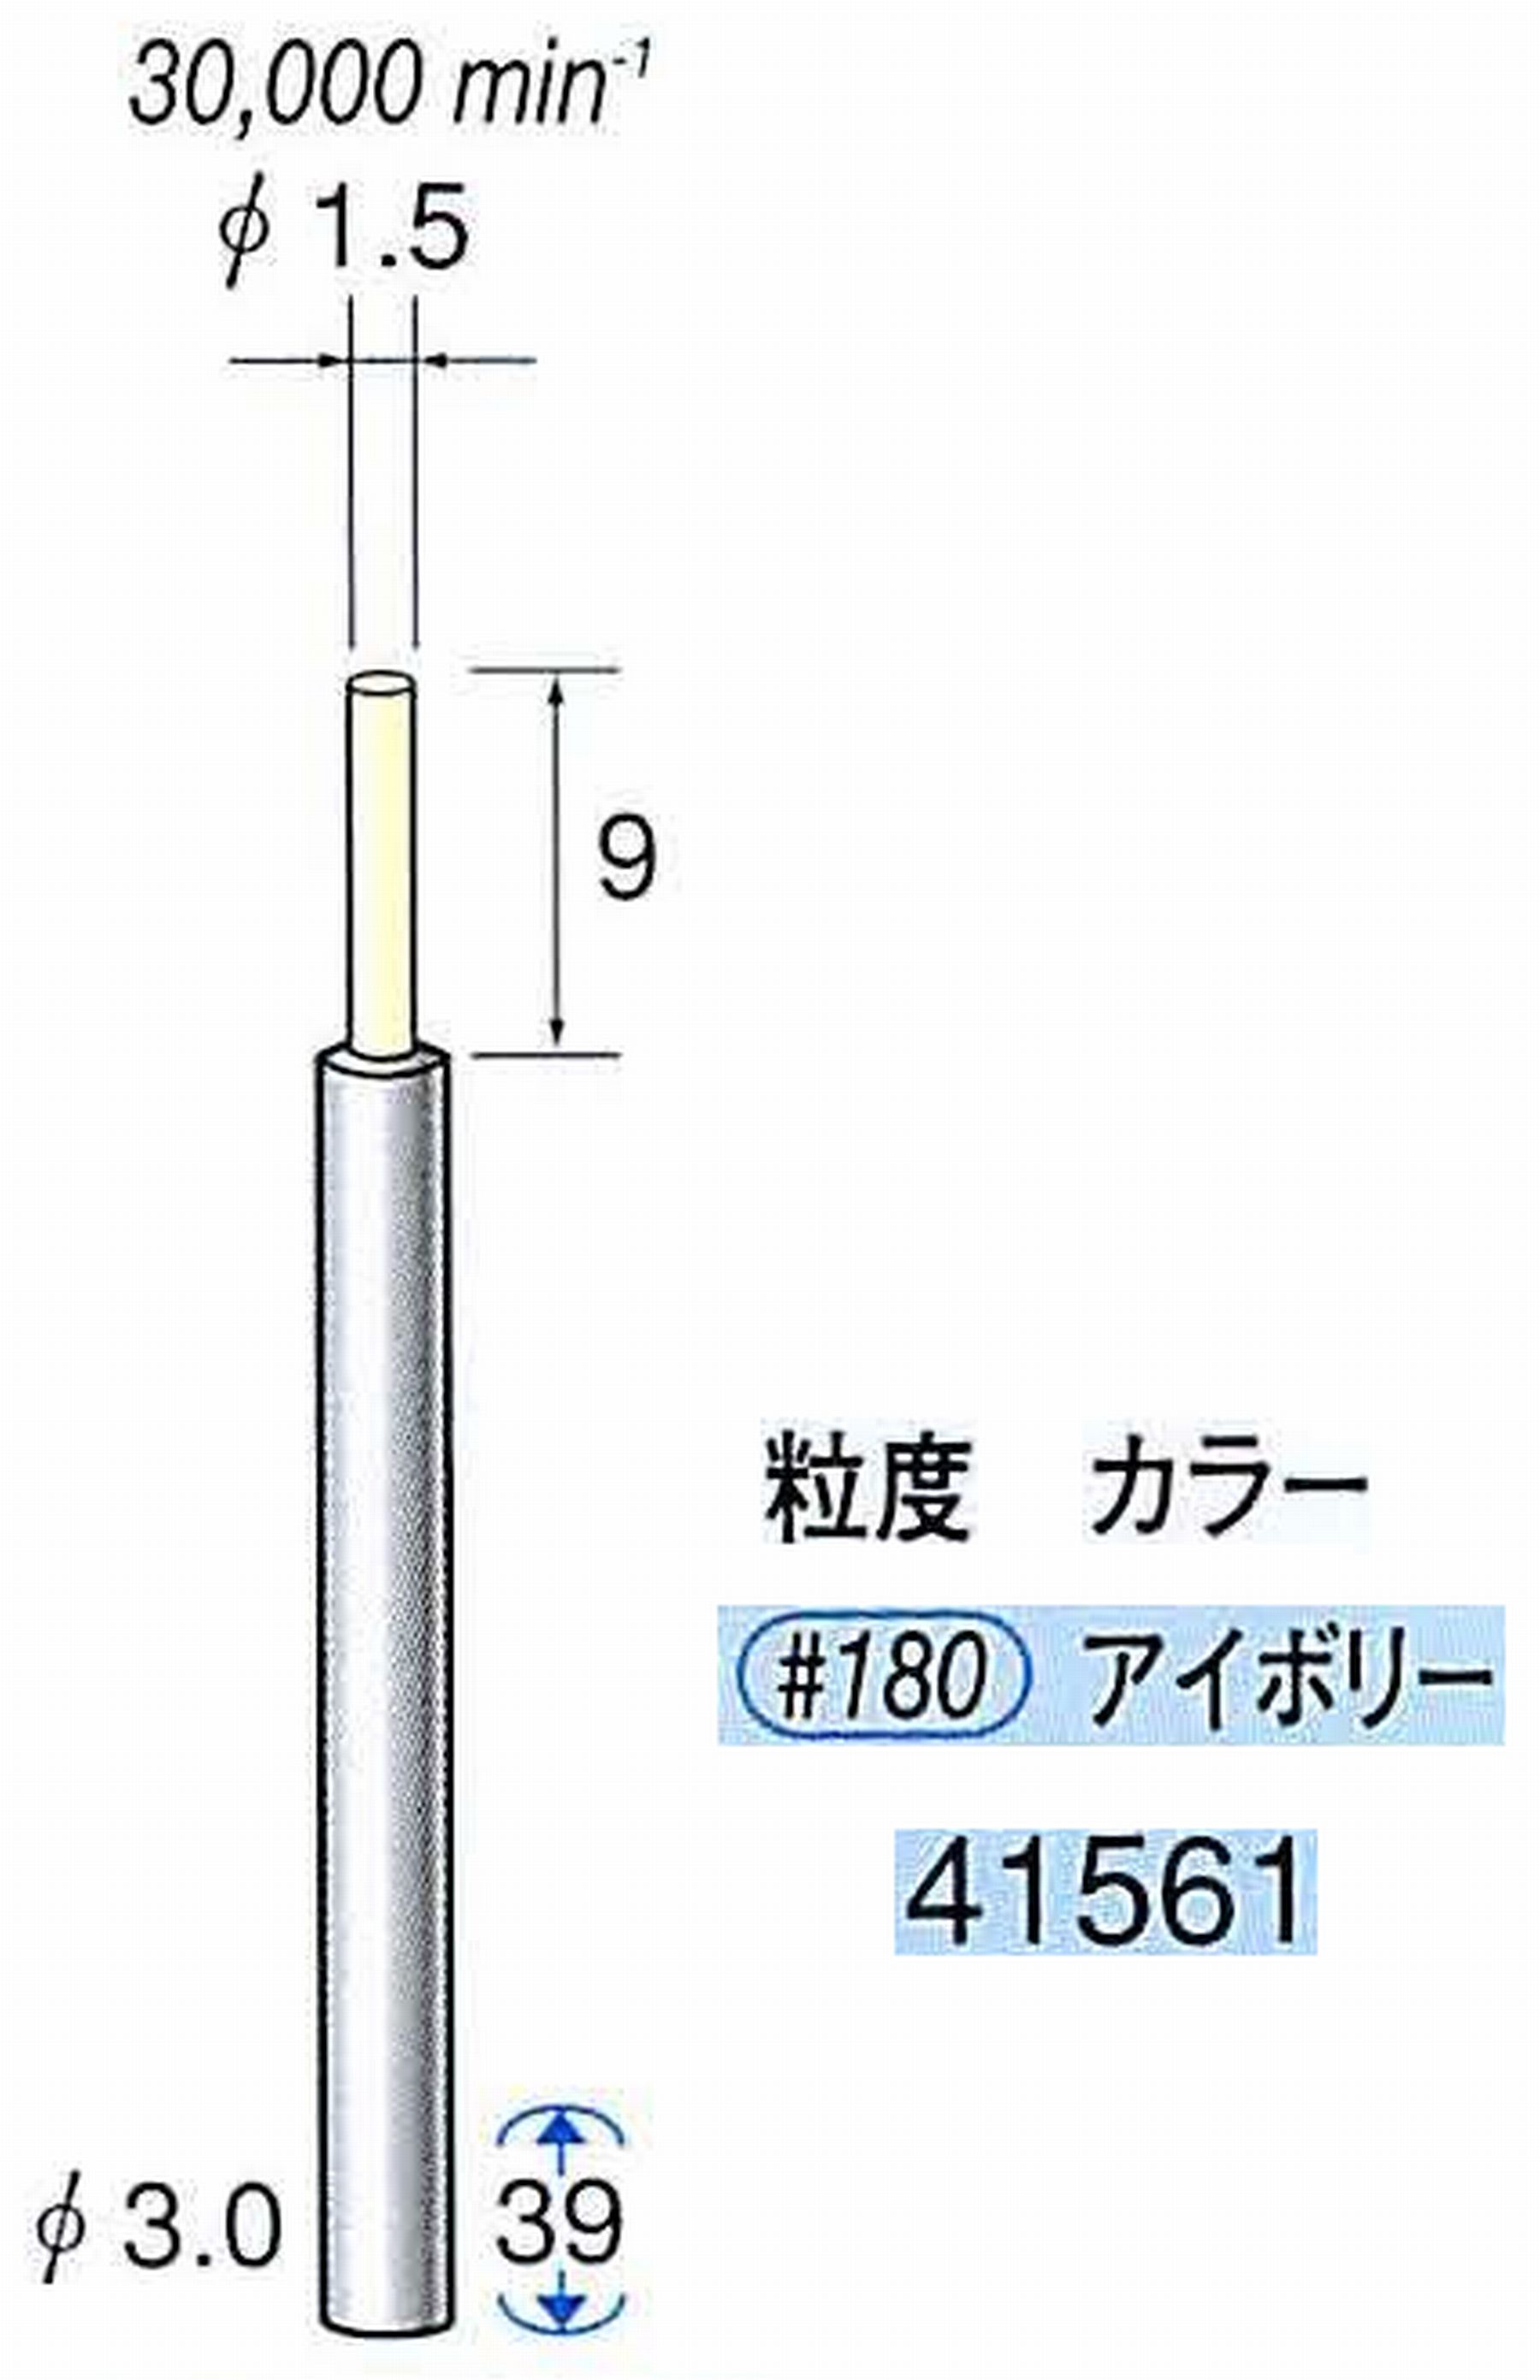 ナカニシ/NAKANISHI セラファイバー精密軸付砥石(カラー アイボリー) 軸径(シャンク) φ3.0mm 41561